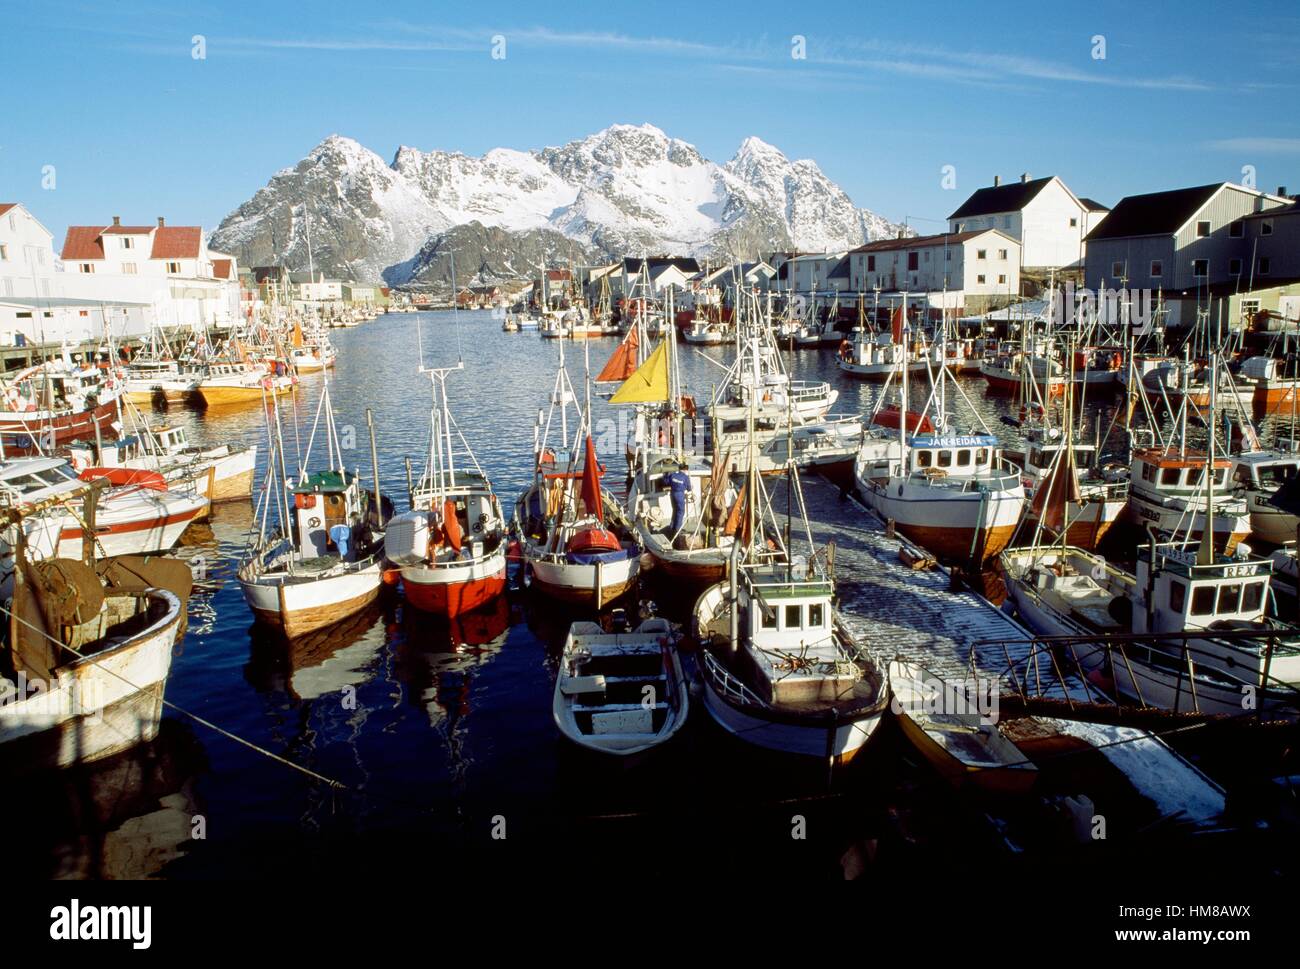 Bateaux de pêche dans le port de Henningsvaer, Lofoten, Nordland, Norvège. Banque D'Images